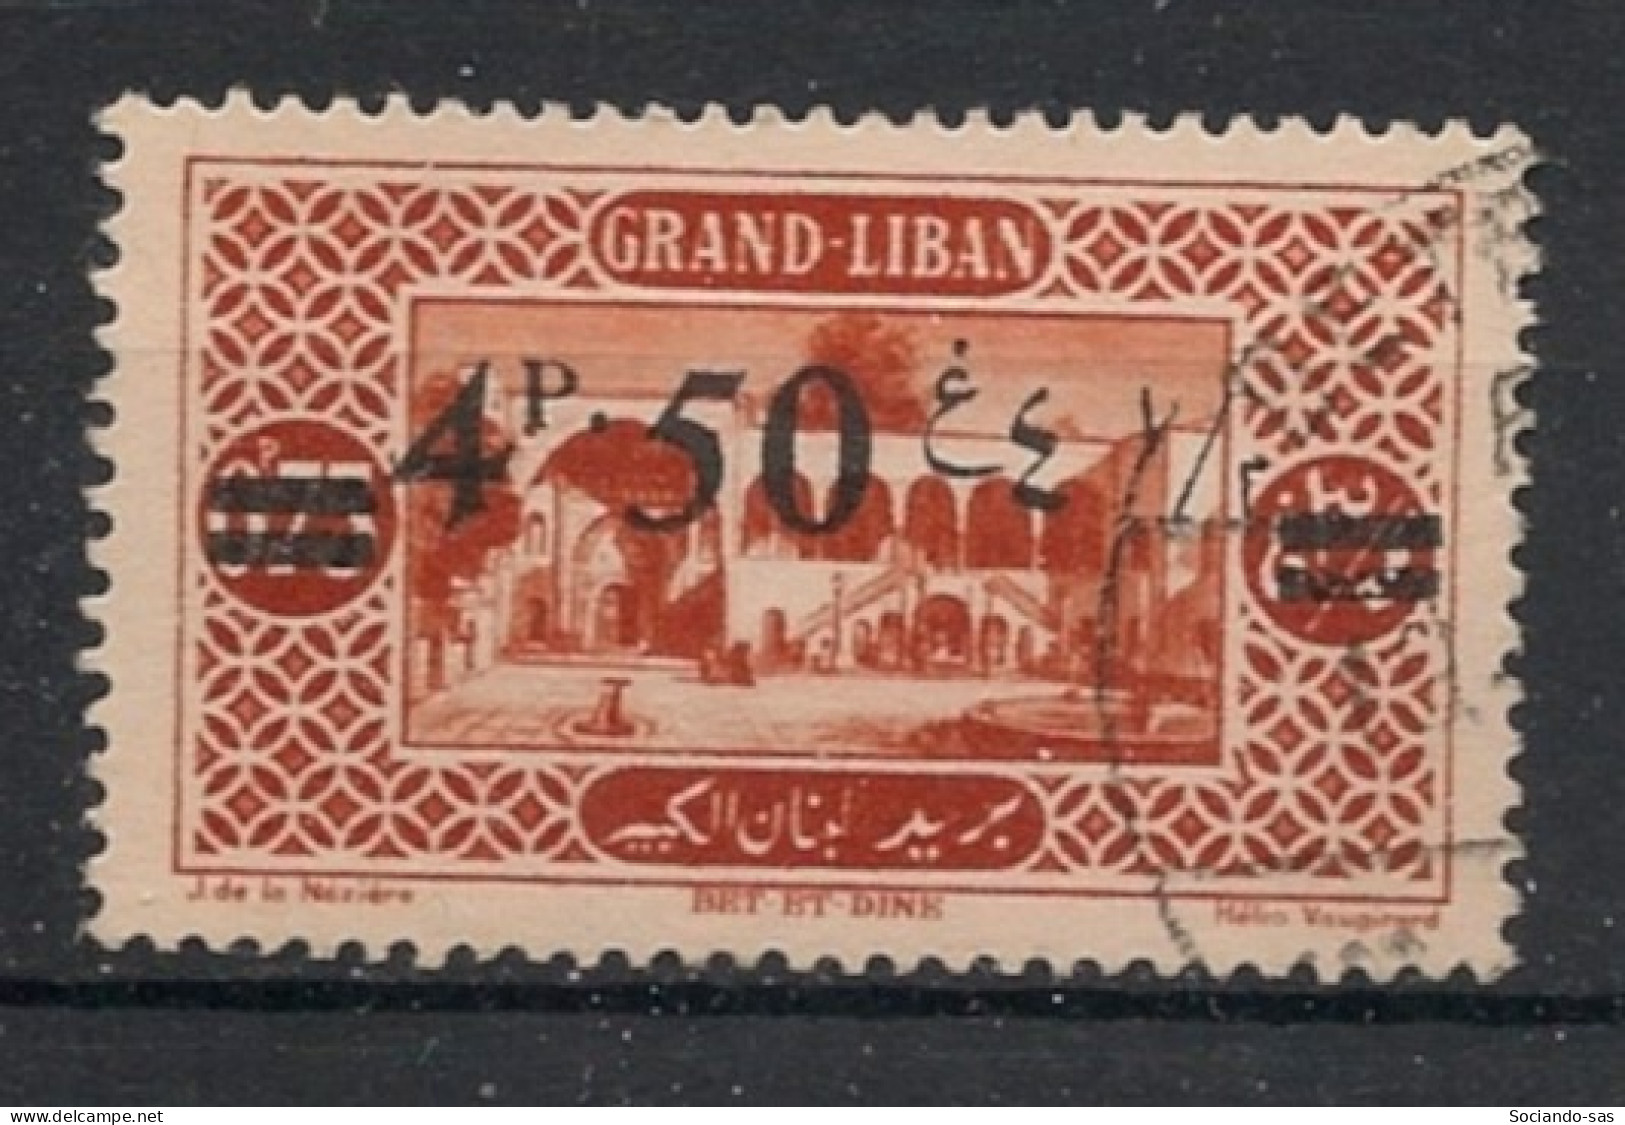 GRAND LIBAN - 1926 - N°YT. 77 - 4pi50 Sur 0pi75 Brun-orange - Oblitéré / Used - Usados